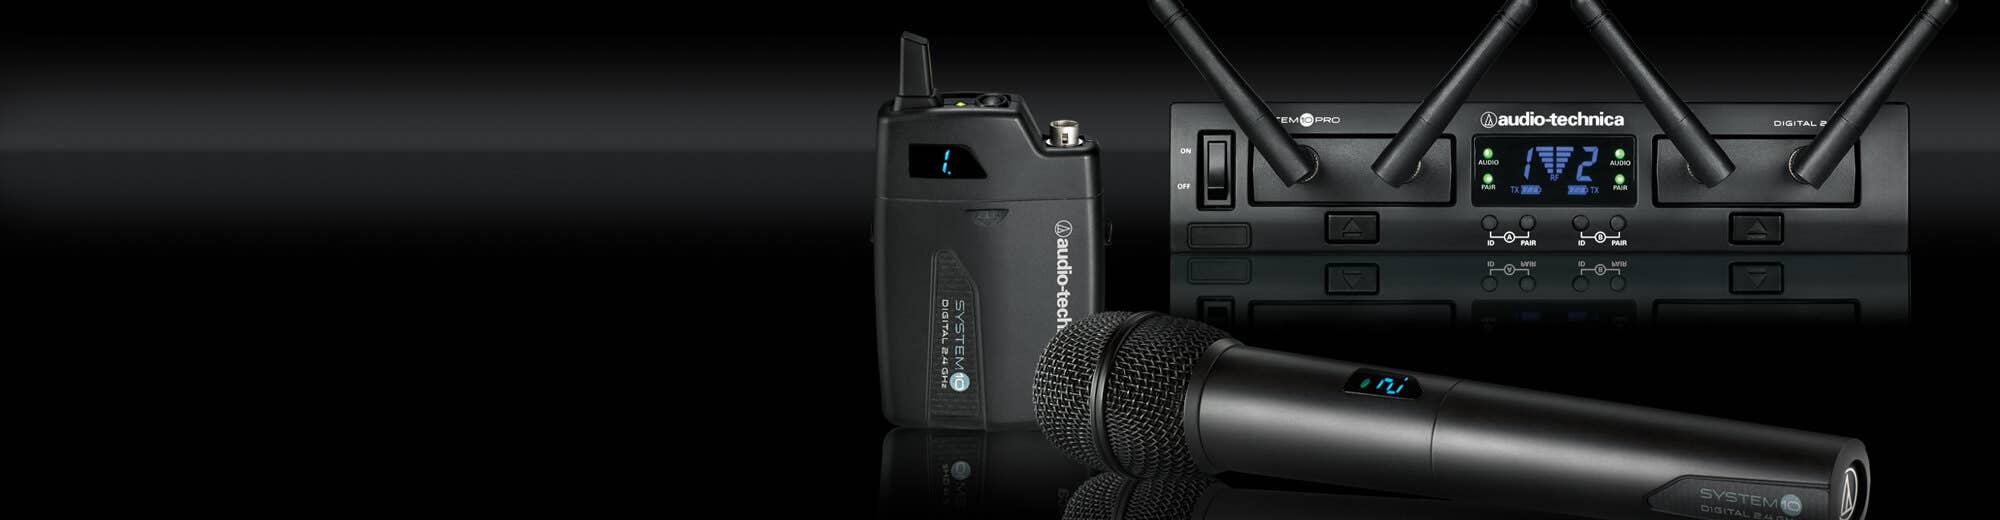 Microphone Sans Fil Professionnel, Micro Portable de Réduction du